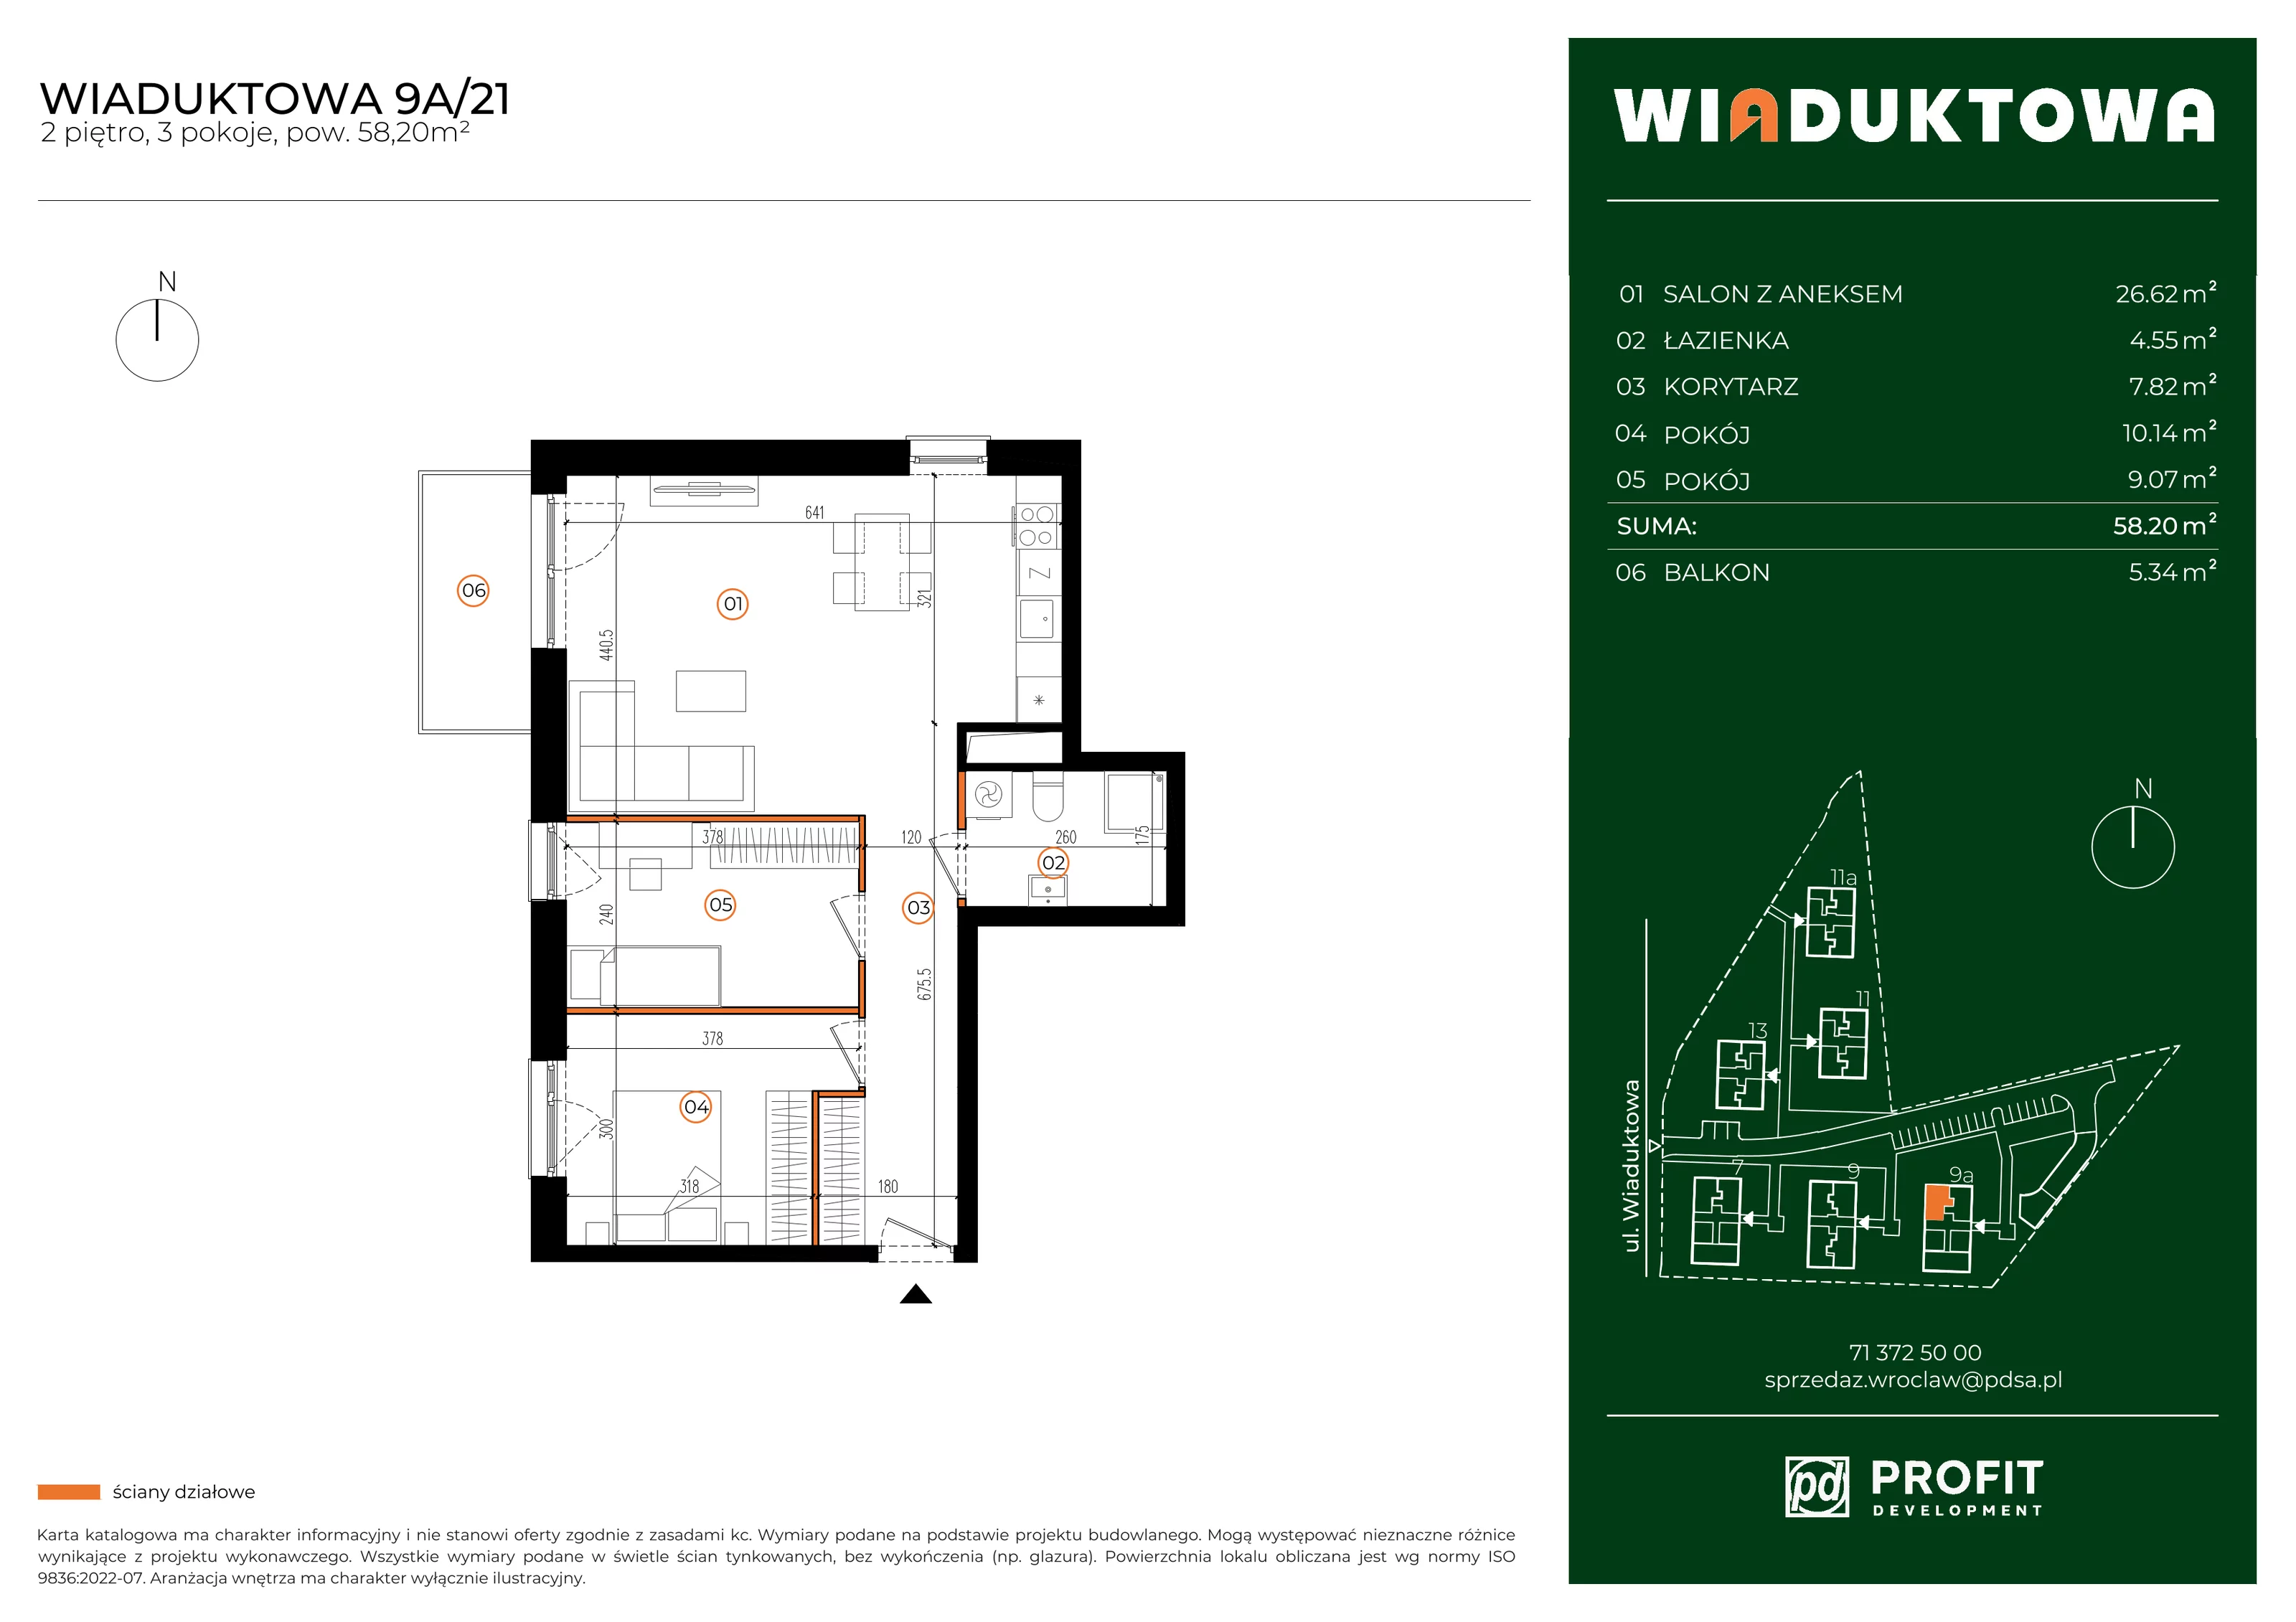 Mieszkanie 58,20 m², piętro 2, oferta nr WI/9A/21, Wiaduktowa, Wrocław, Krzyki-Partynice, Krzyki, ul. Wiaduktowa